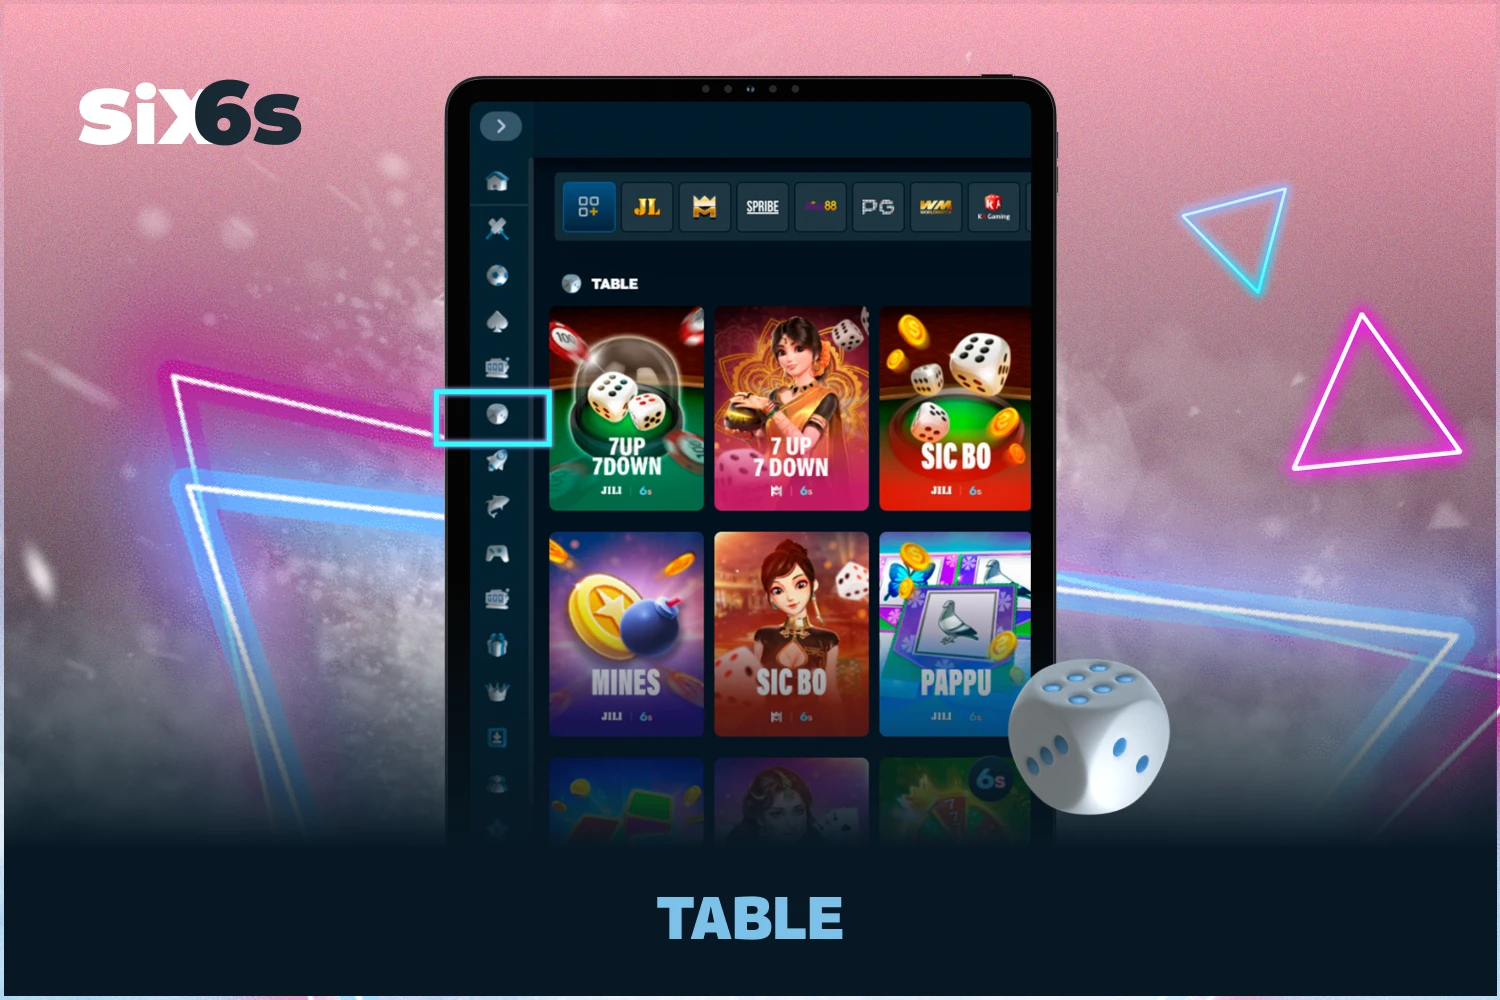 टेबल गेम Six6s कैसीनो गेम की एक शैली है जो ब्लैकजैक, क्रेप्स, रूलेट और बैकारेट जैसे क्लासिक लोकप्रिय खेलों पर आधारित है